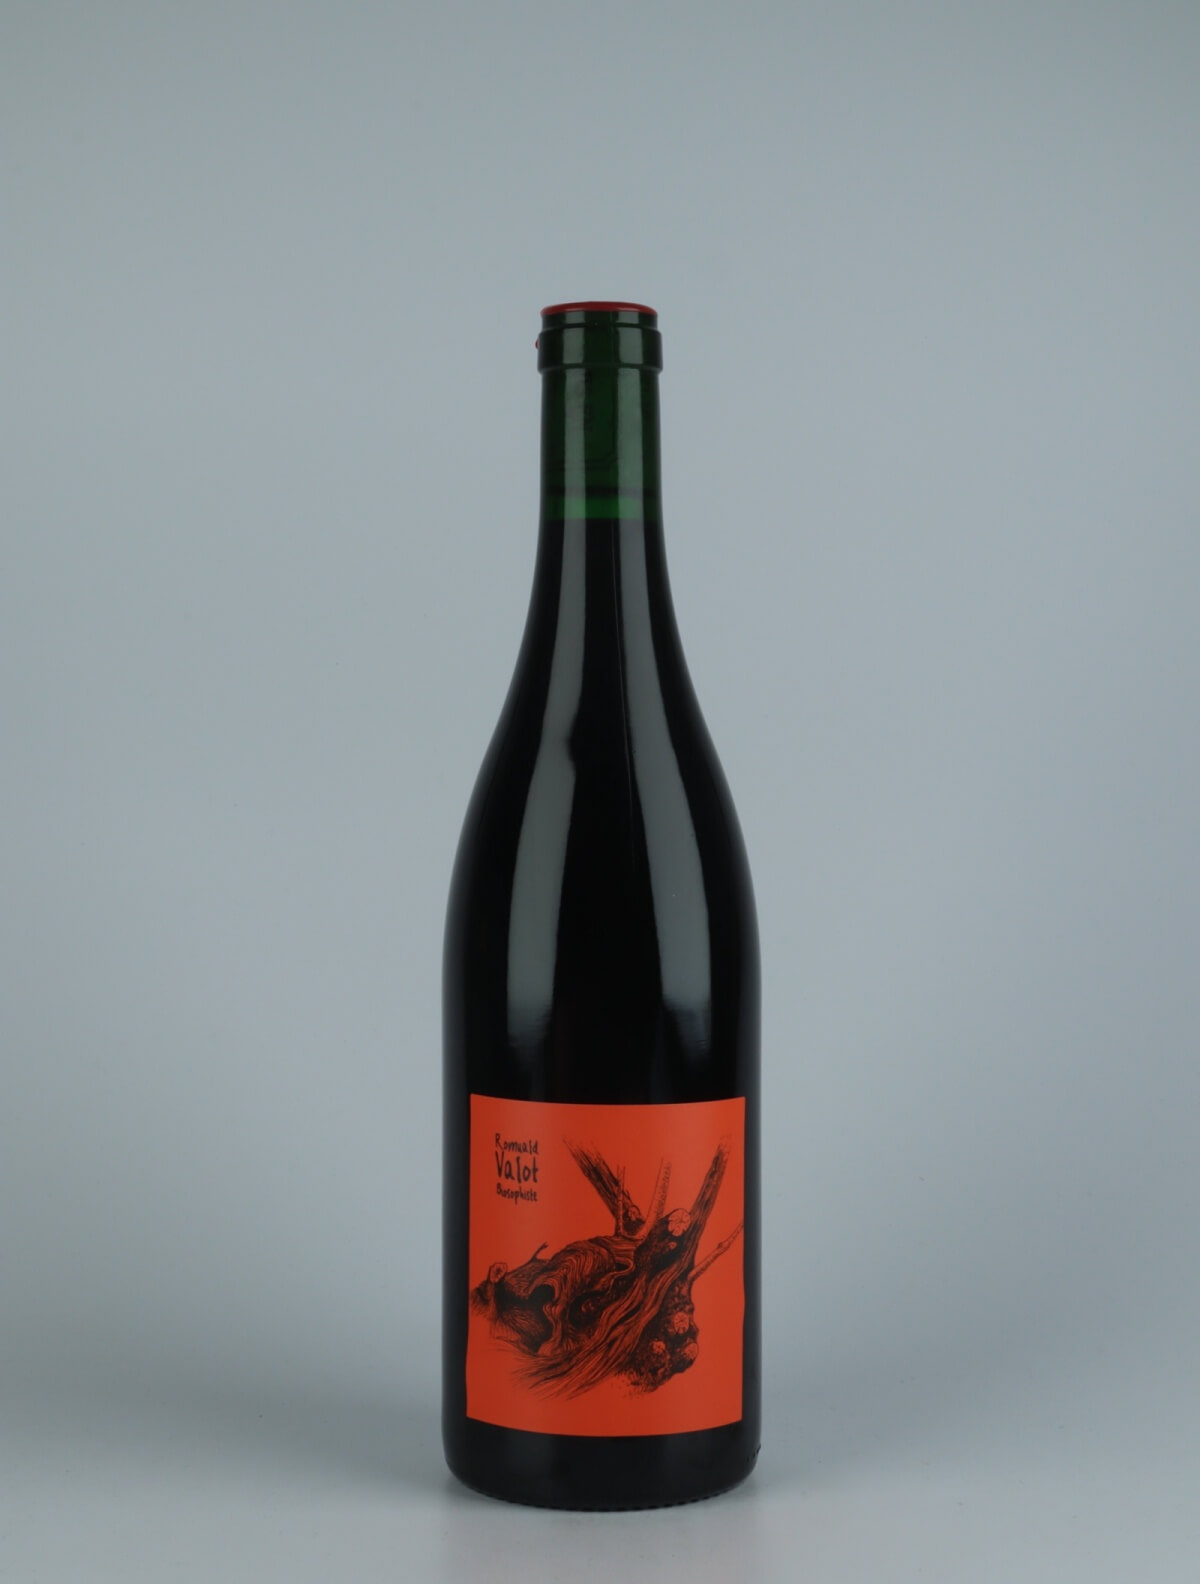 En flaske 2020 Chénas Rødvin fra Romuald Valot, Beaujolais i Frankrig